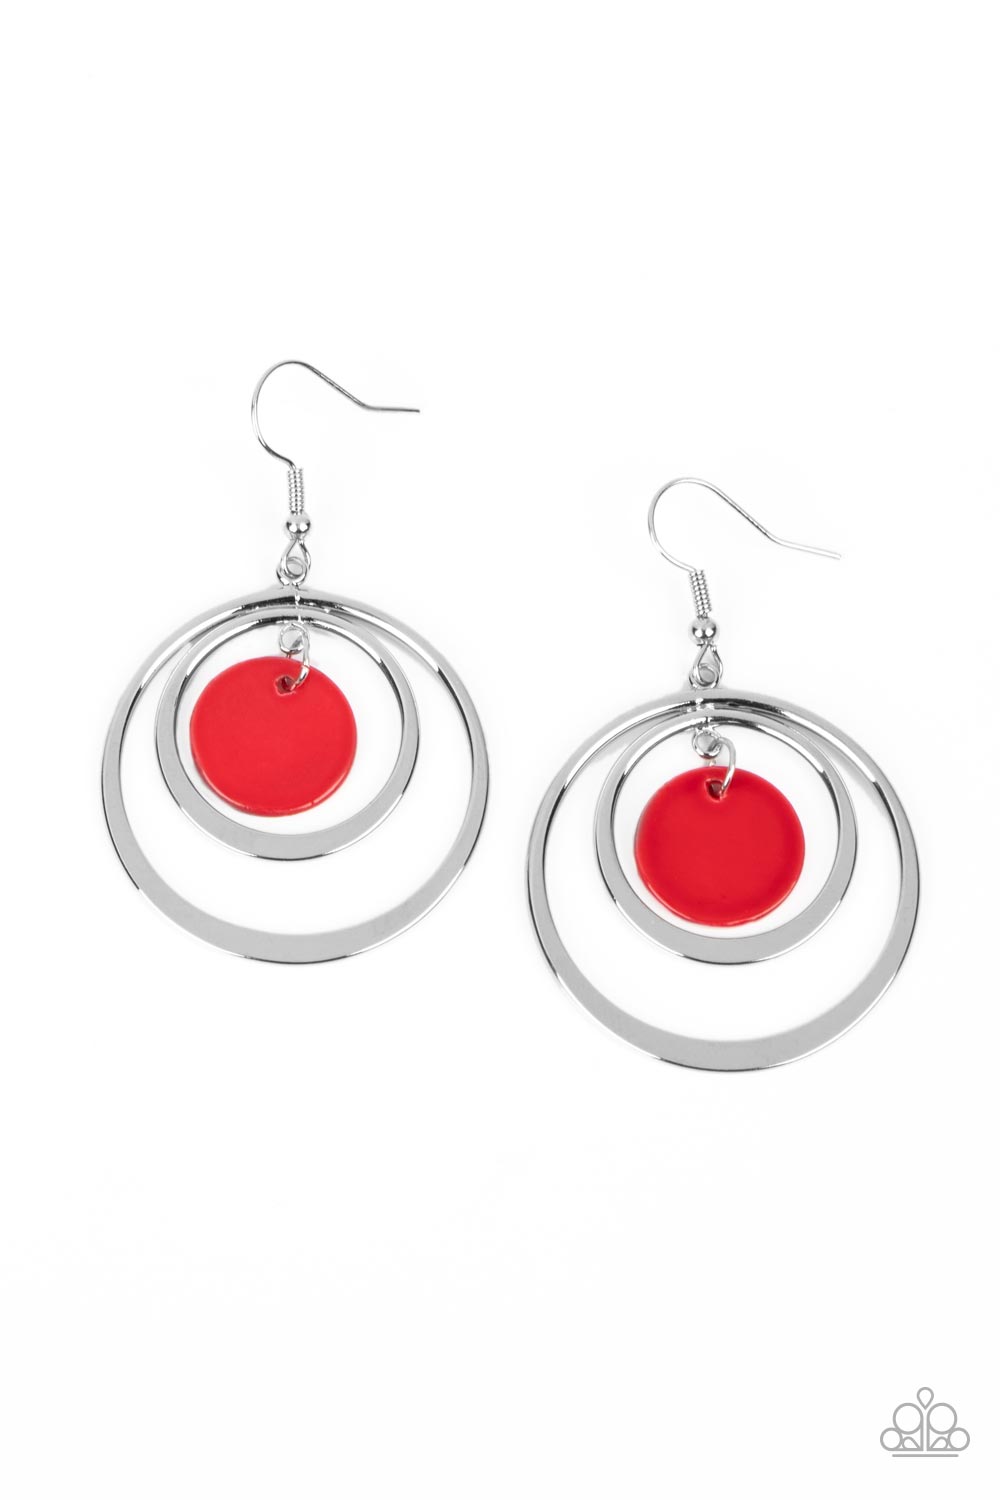 Mai Tai Tango - red - Paparazzi earrings